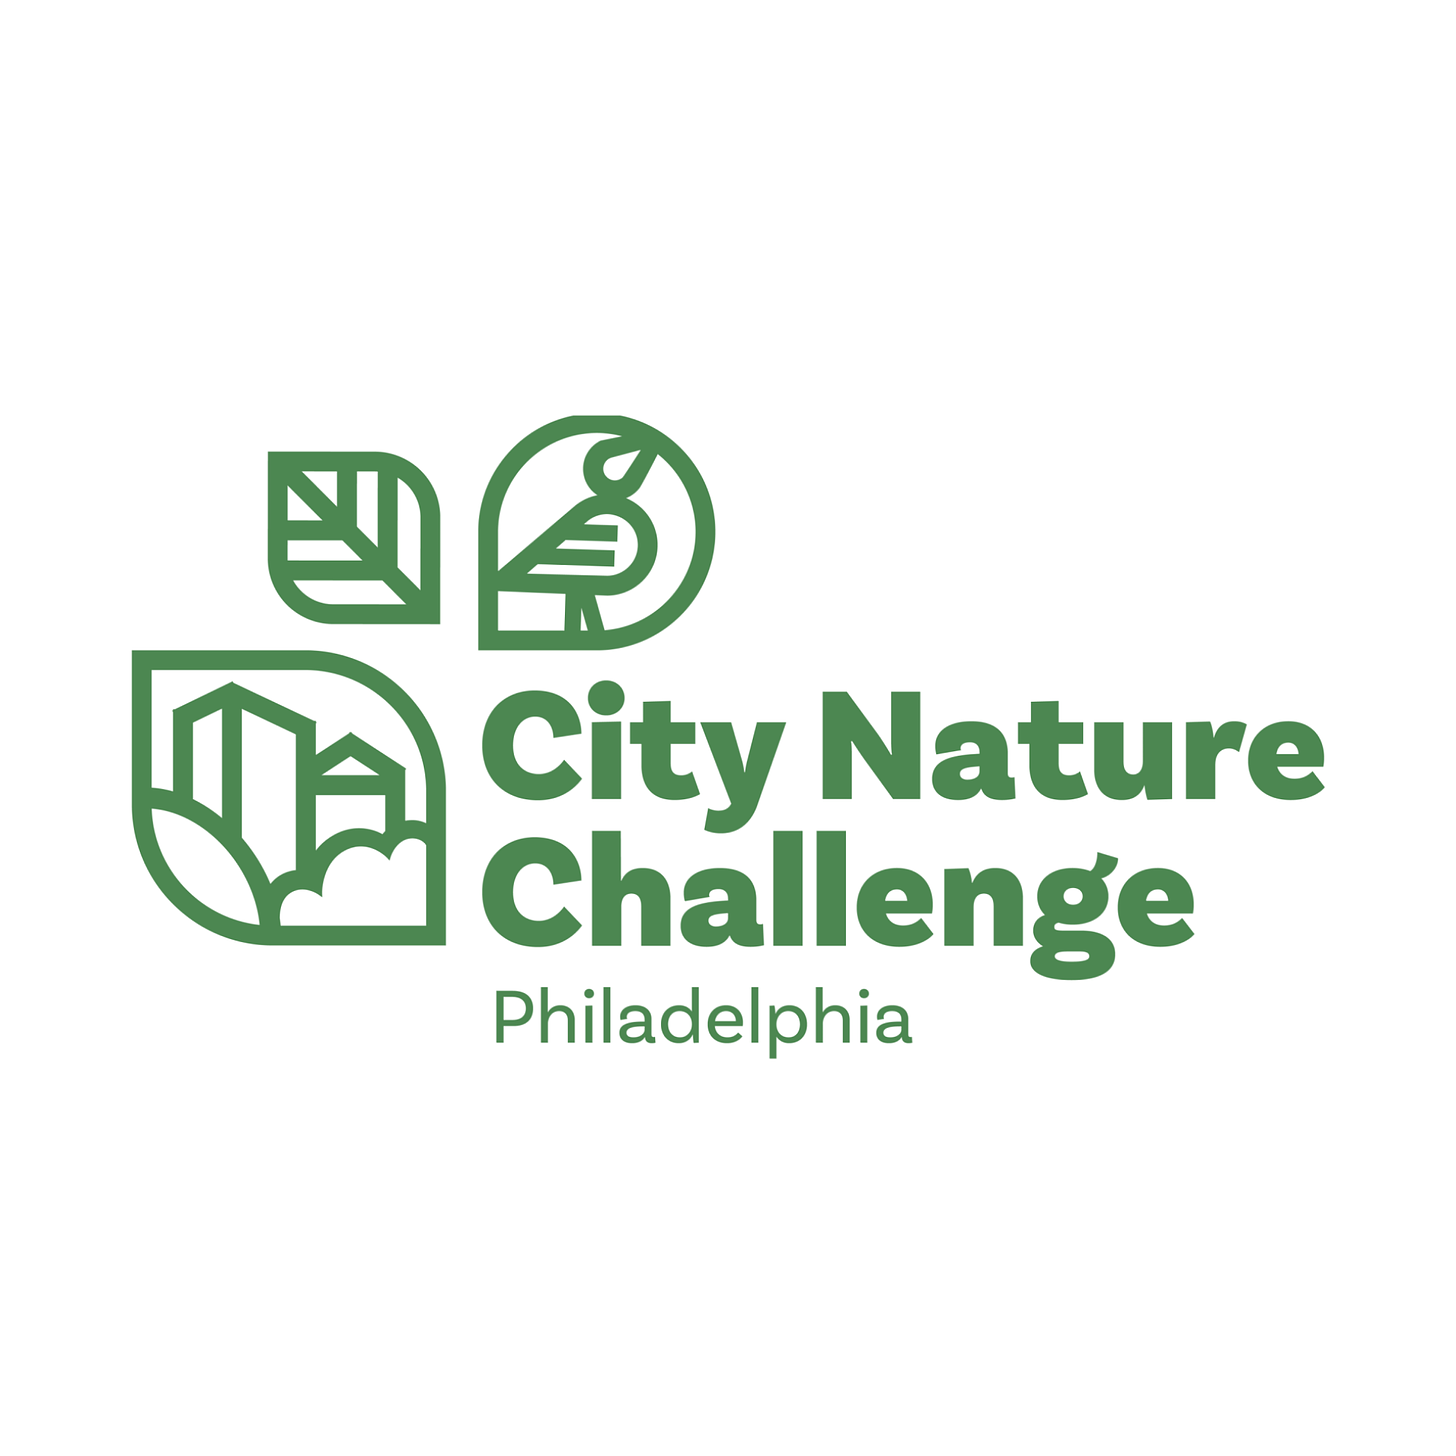 City Nature Challenge Philadelphia logo